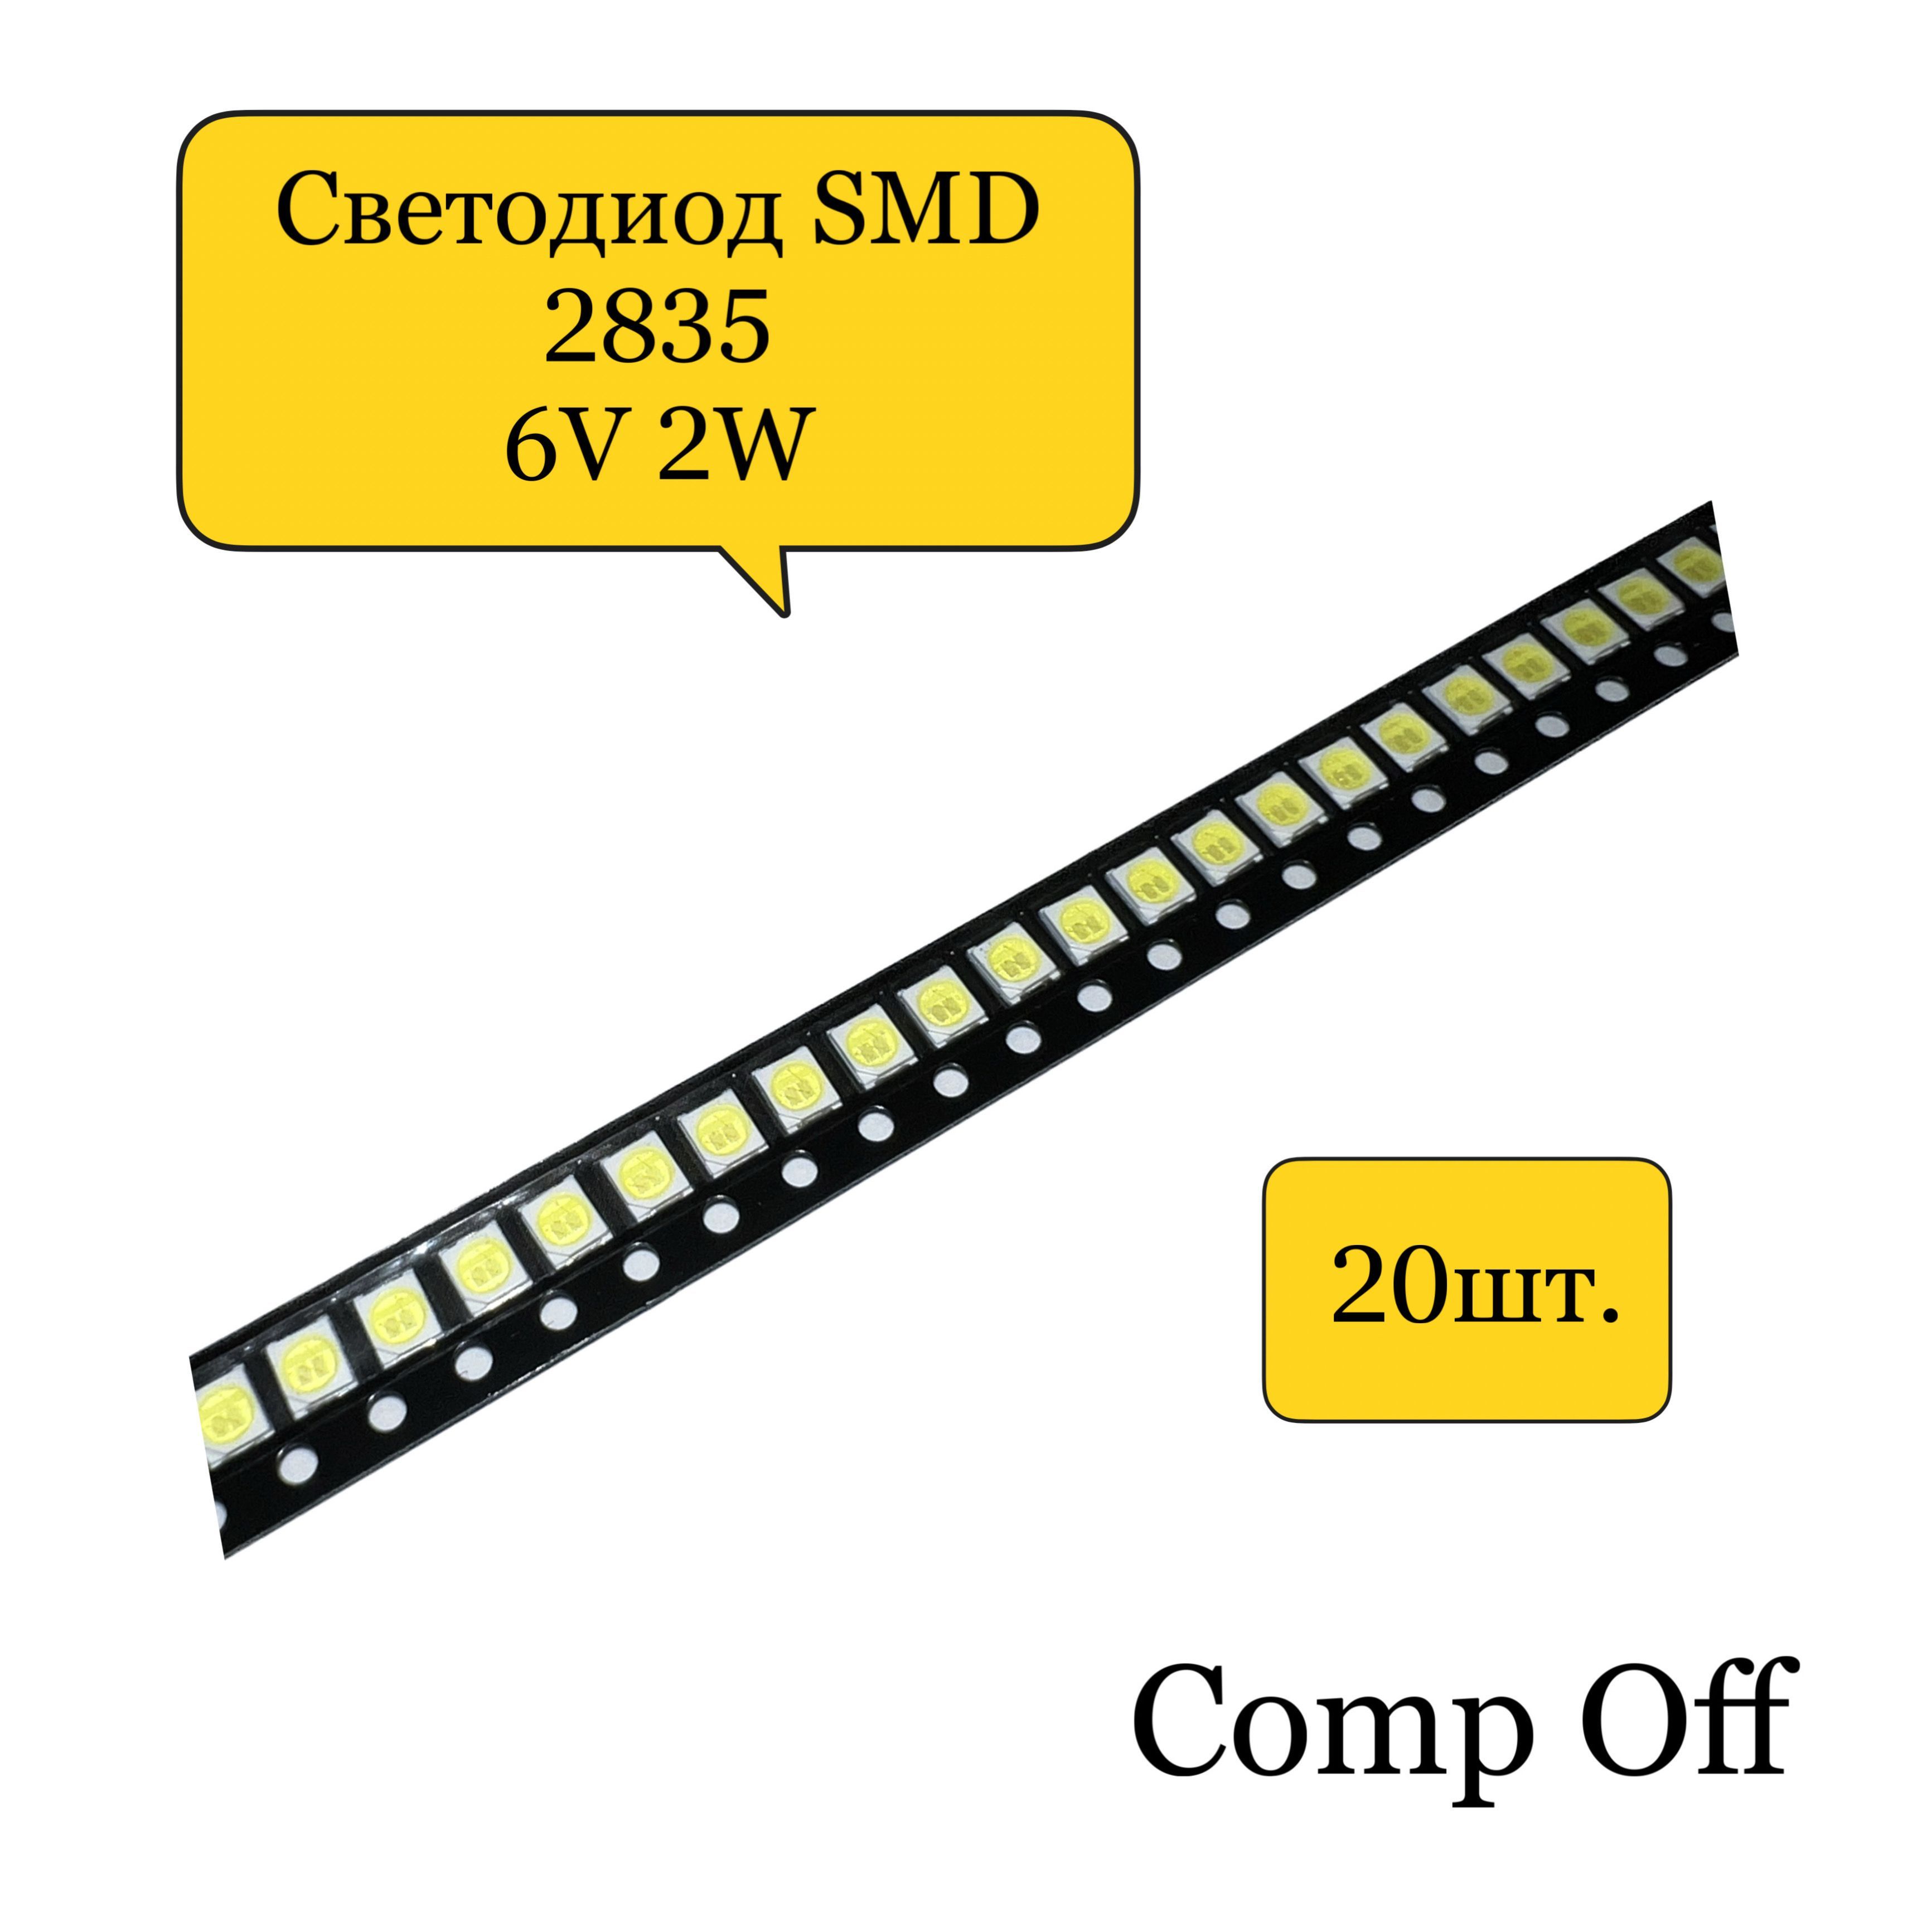 Светодиоды 2835 характеристики. SMD 2835 светодиоды. Светодиод СМД 2835 параметры. Светодиод SMD 2835 6v 2w. SMD различия.